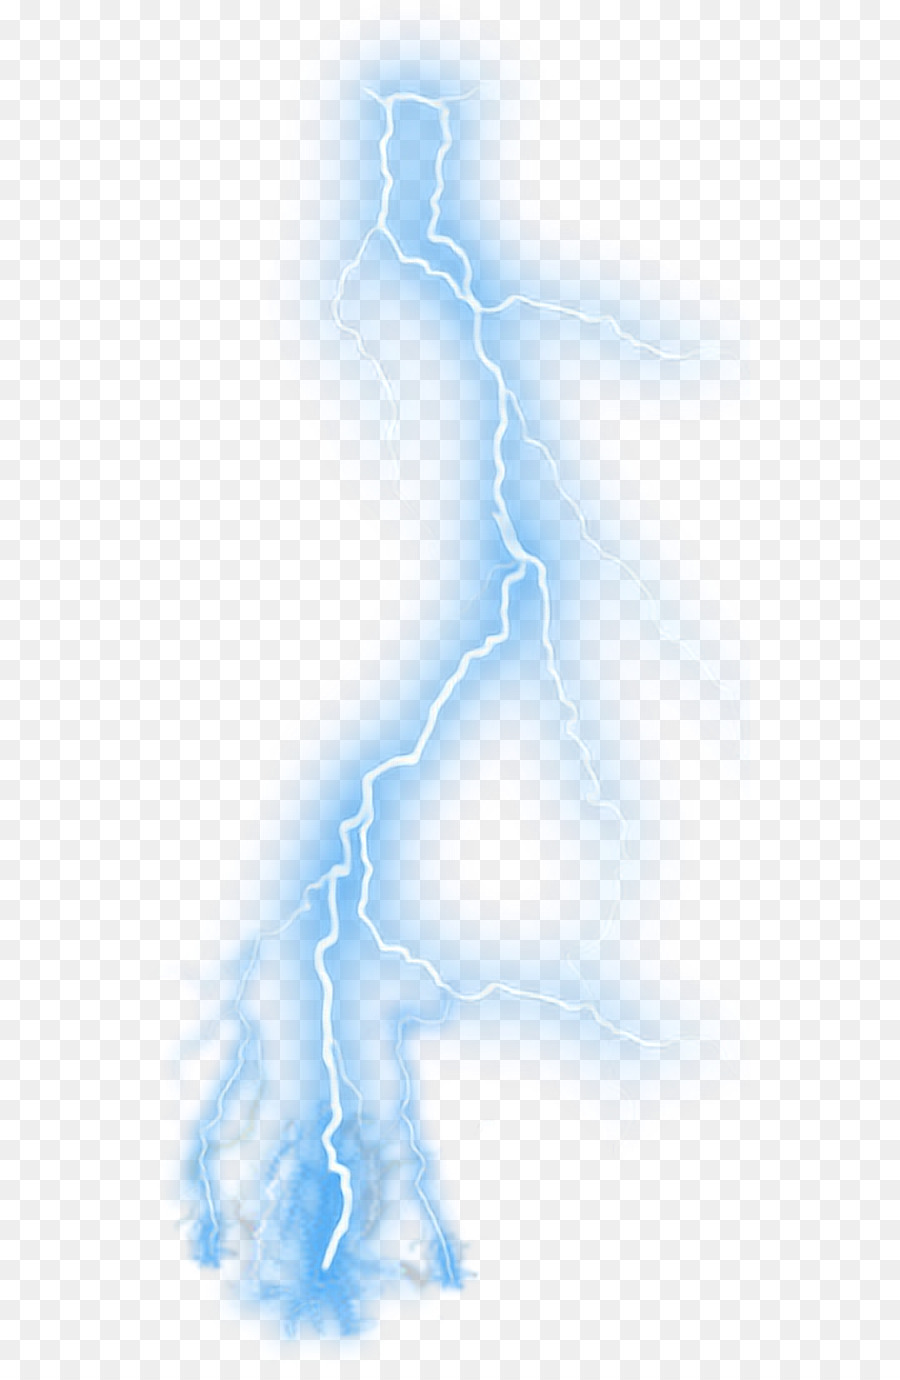 Lightning Blue Thunderstorm Clip art - lightning png download - 600*1364 - Free Transparent Lightning png Download.